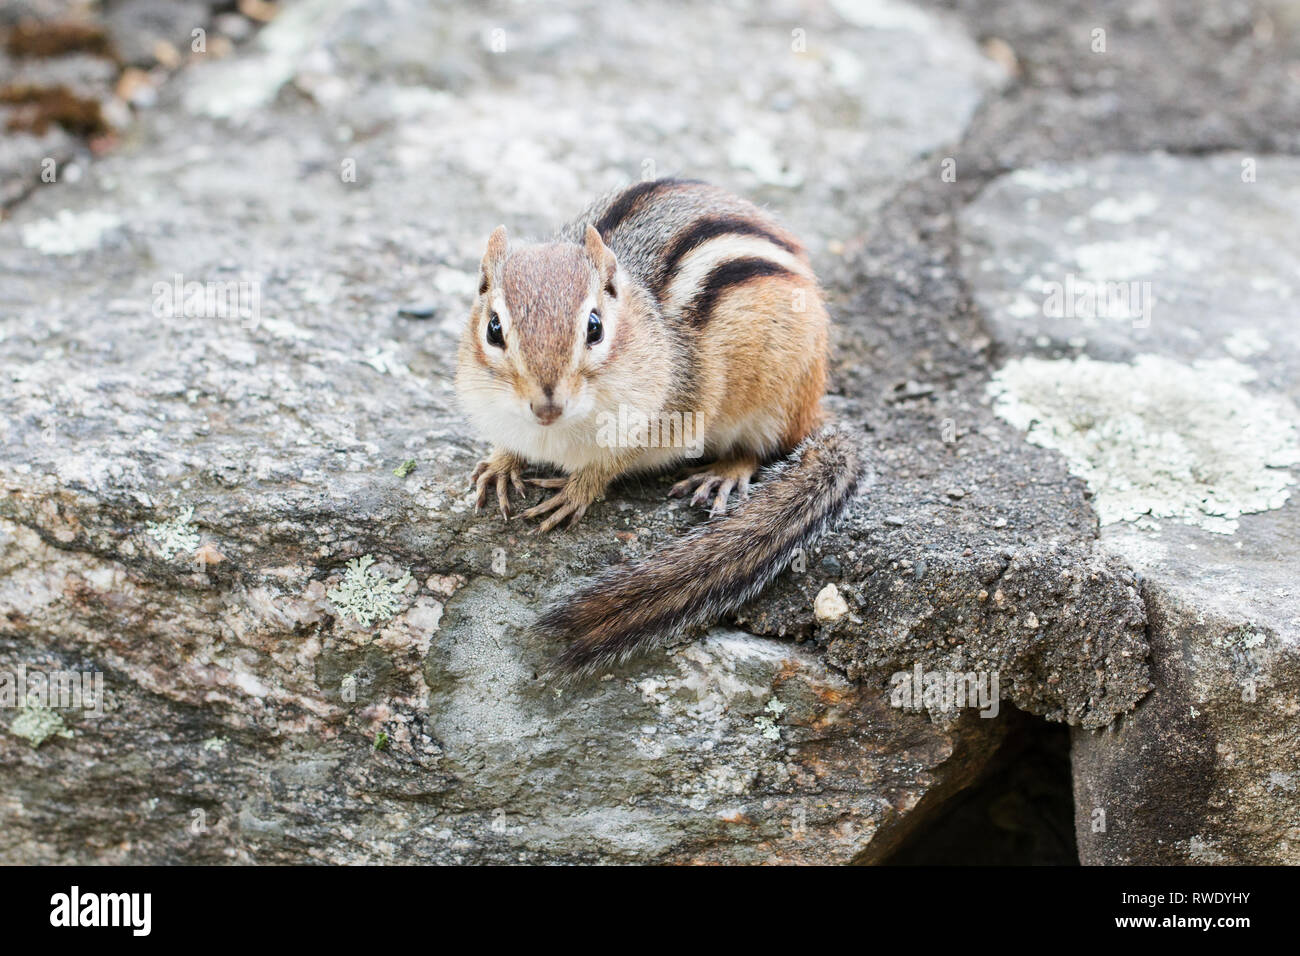 Tamias striatus, orientale scoiattolino, seduto su di una parete di roccia. Foto Stock